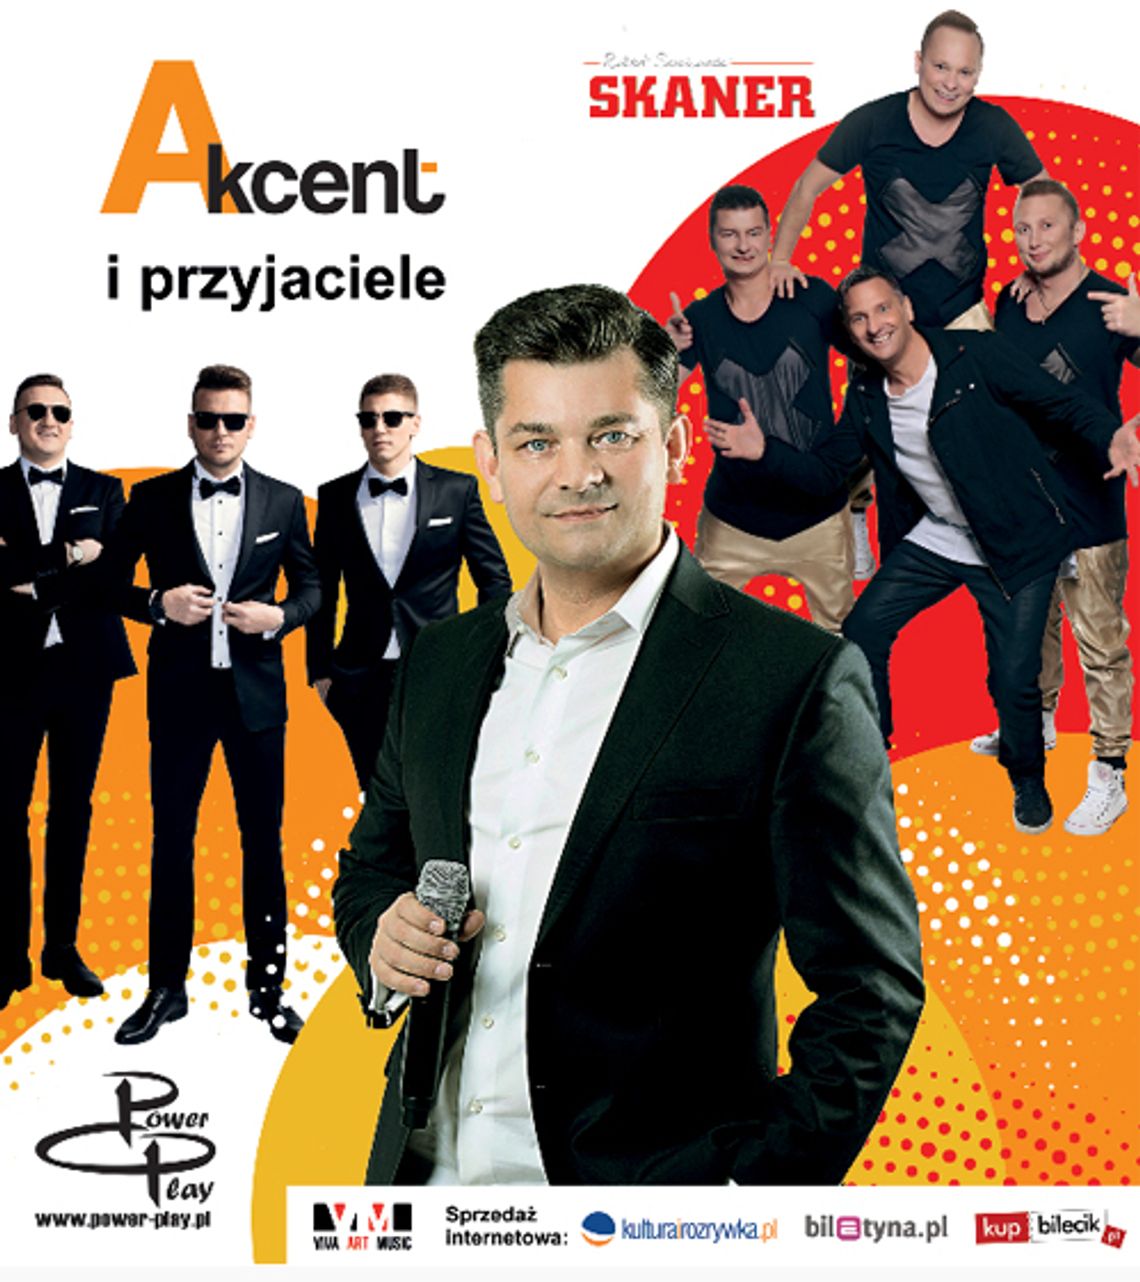 Koncert Akcent i przyjaciele - Akcent, Power Play i Skaner: Zgorzelec